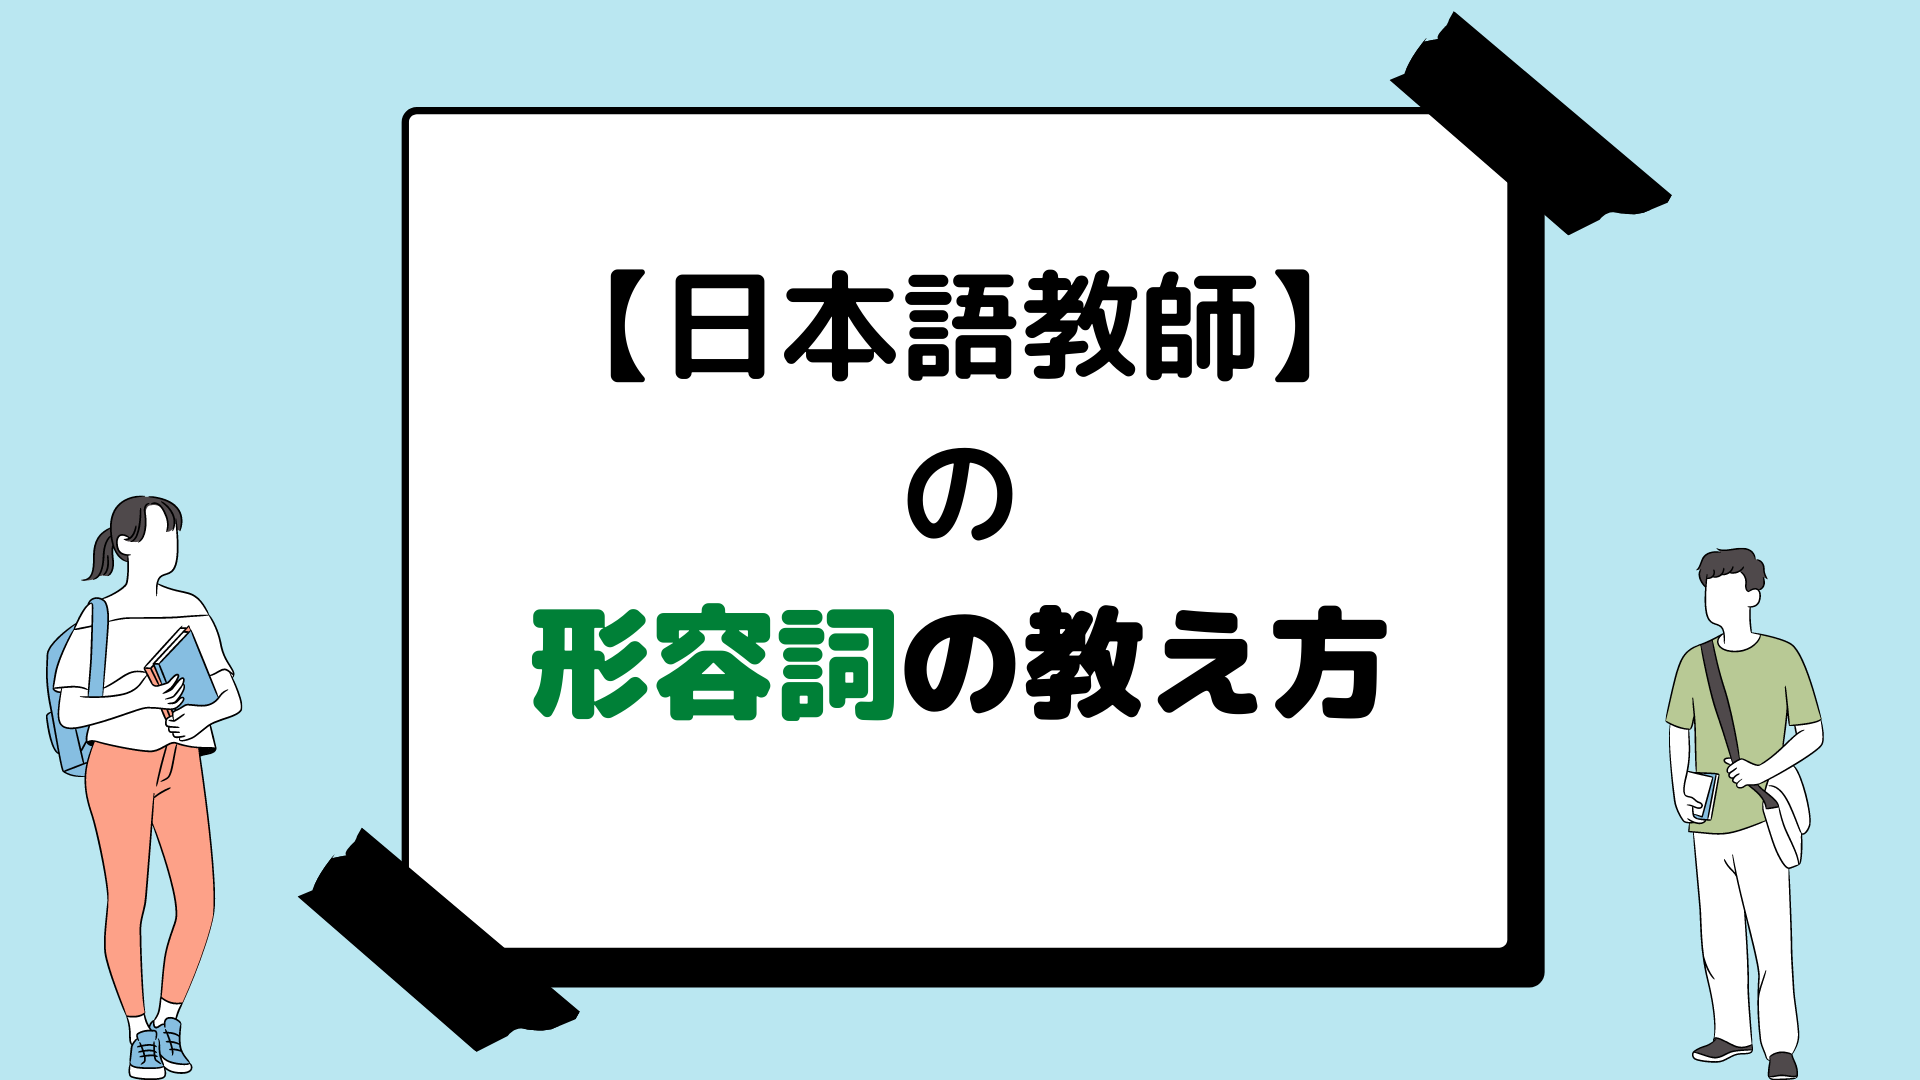 日本語教師 が教える日本語の教え方 語彙 形容詞 の導入 日本語教師の歩き方